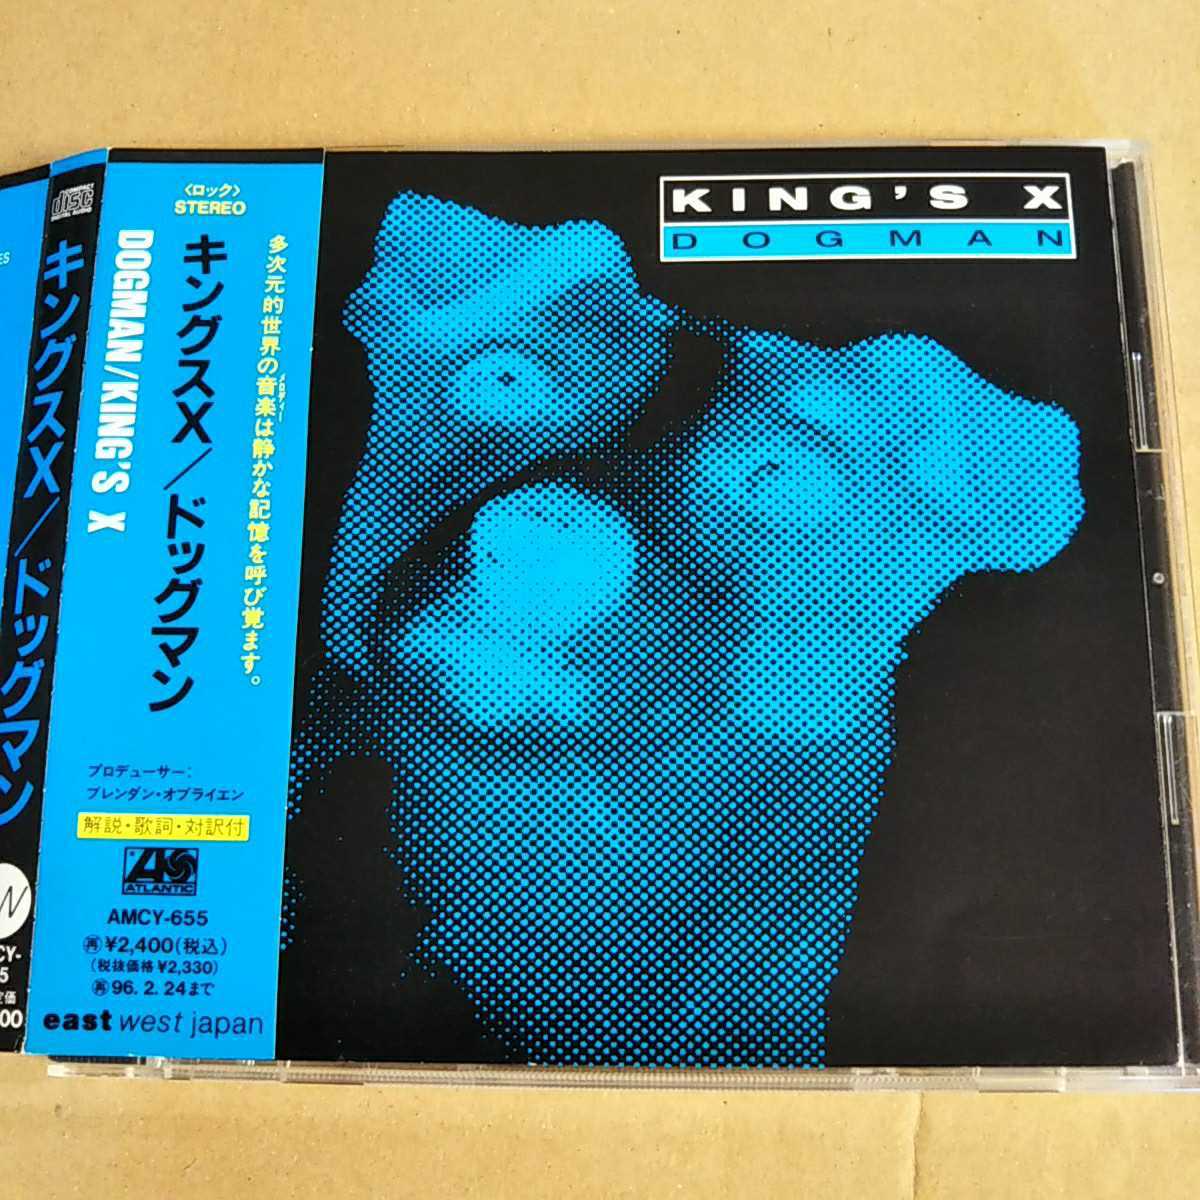 中古CD KINGS X / キングスX『DOGMAN』国内盤/帯有り AMCY-655【1124】